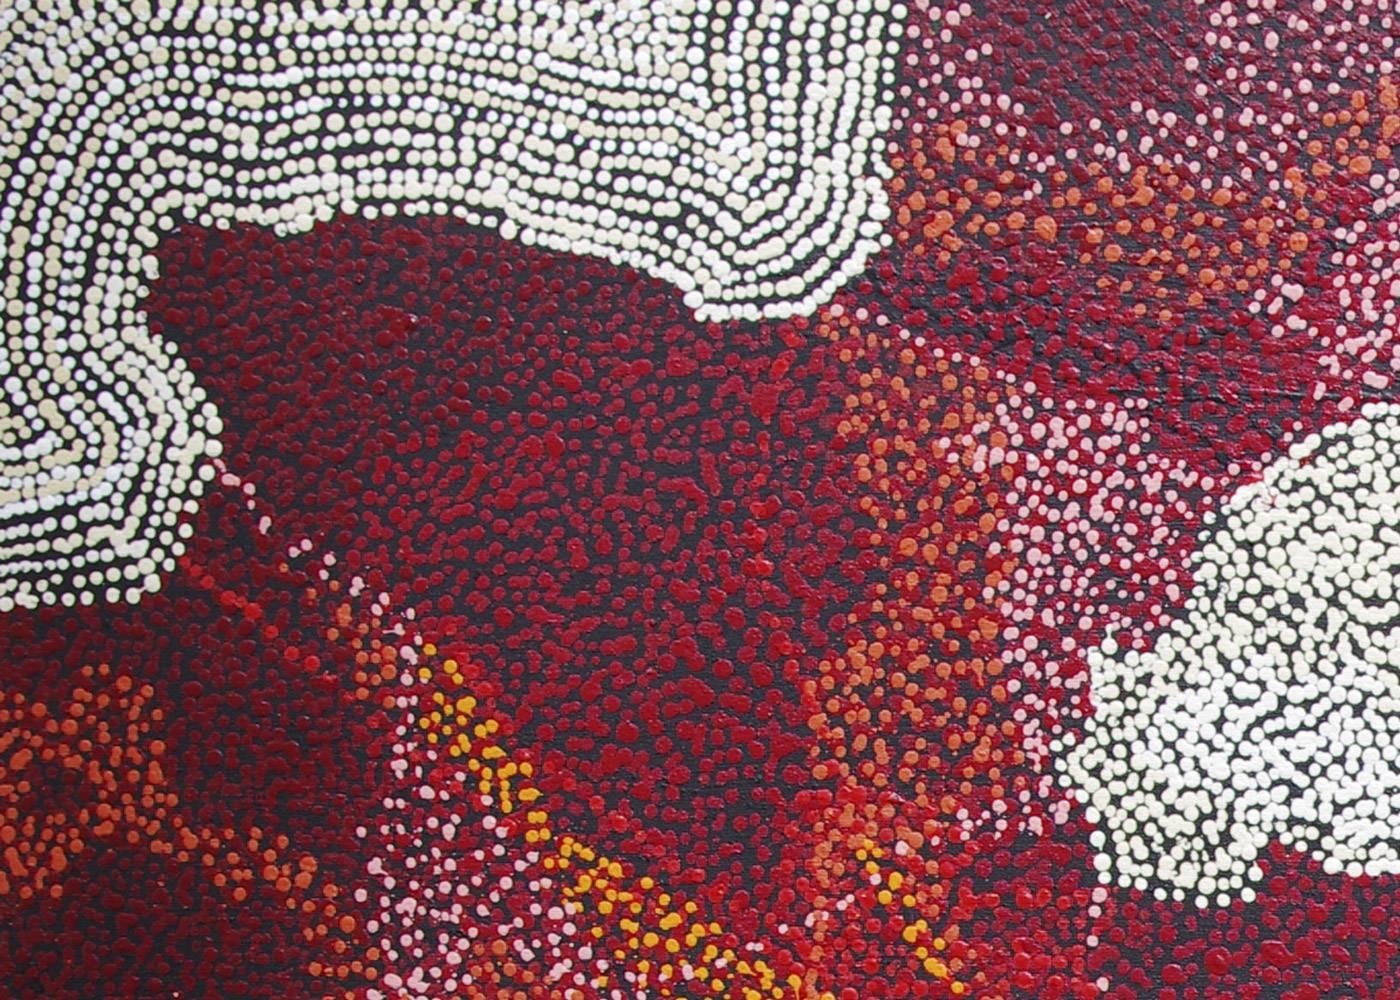 Muna Kulyuru, My Country, red white contemporary Aboriginal landscape painting - Painting by Munu Kulyuru